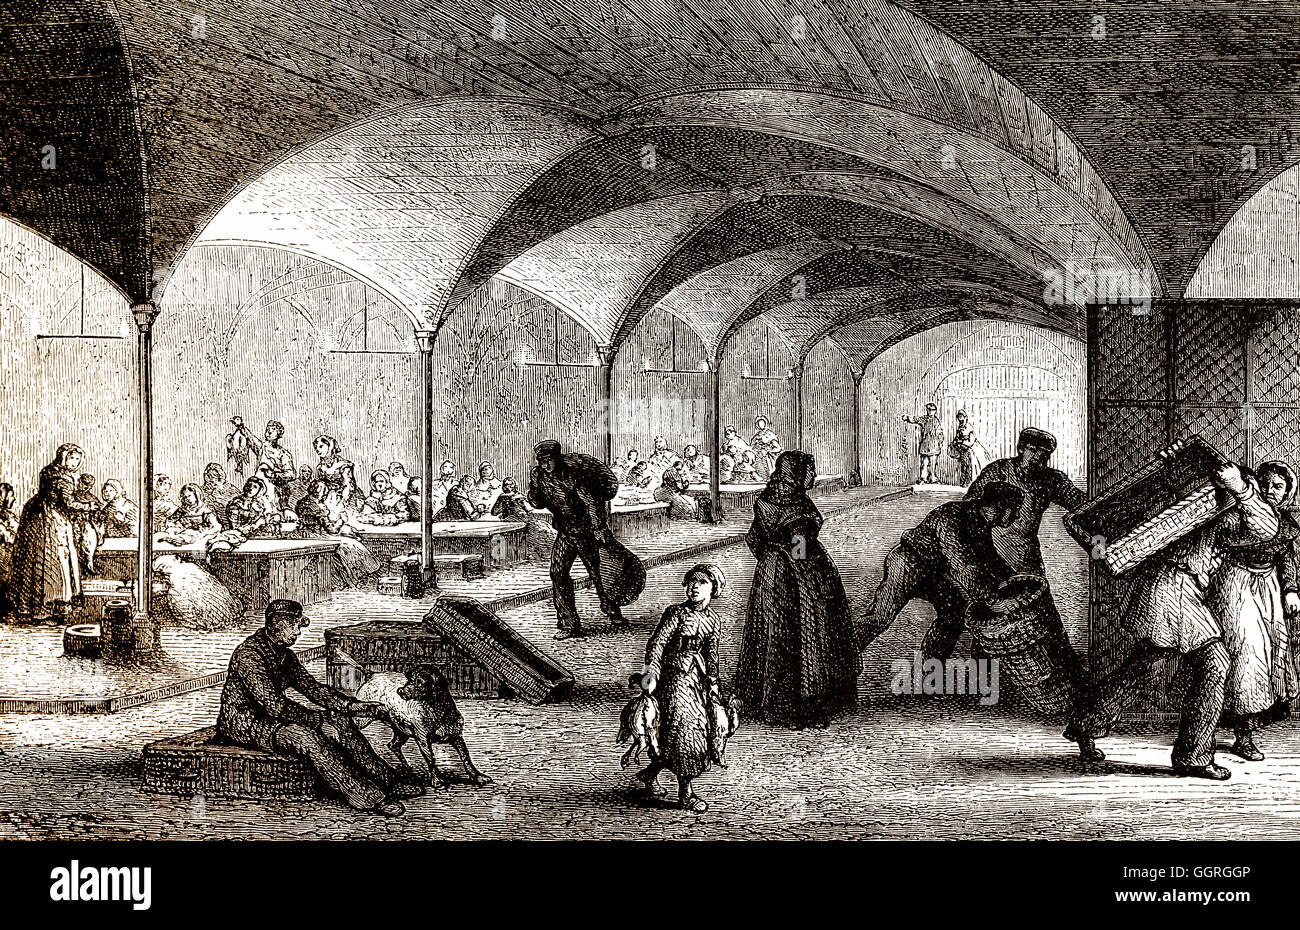 Les Halles de Paris, Markt mit frischen Lebensmitteln, 19. Jahrhundert Stockfoto